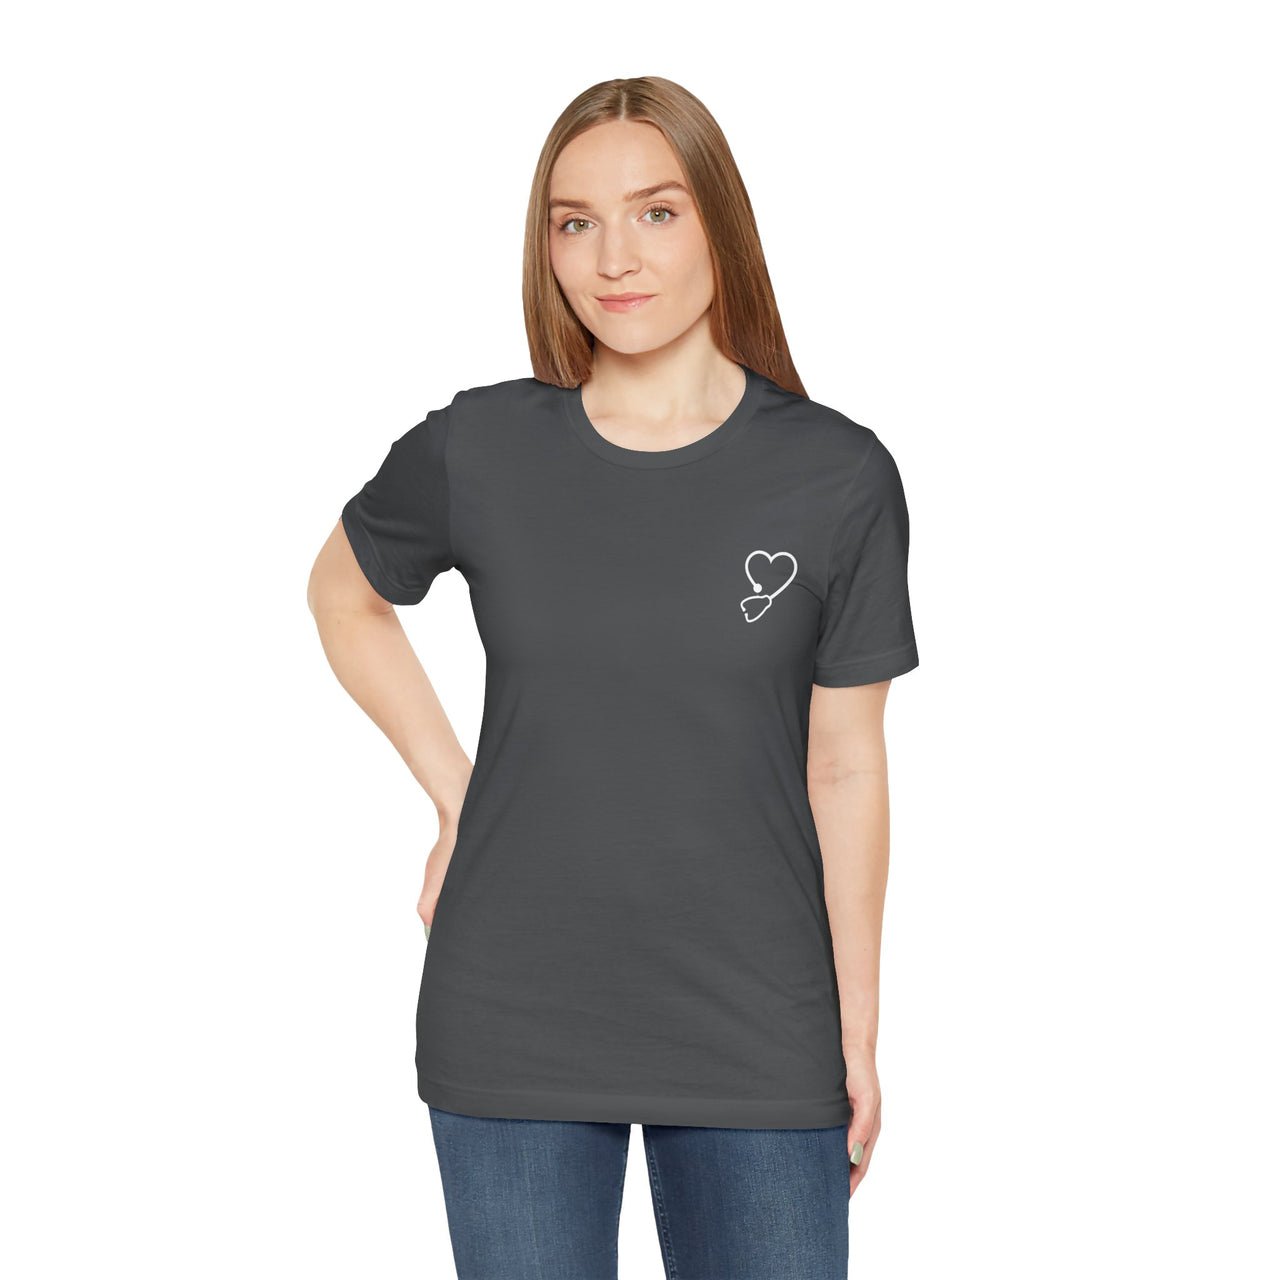 Camiseta unisex oscura "De corazón", Camiseta para médicos, Camiseta de medicina